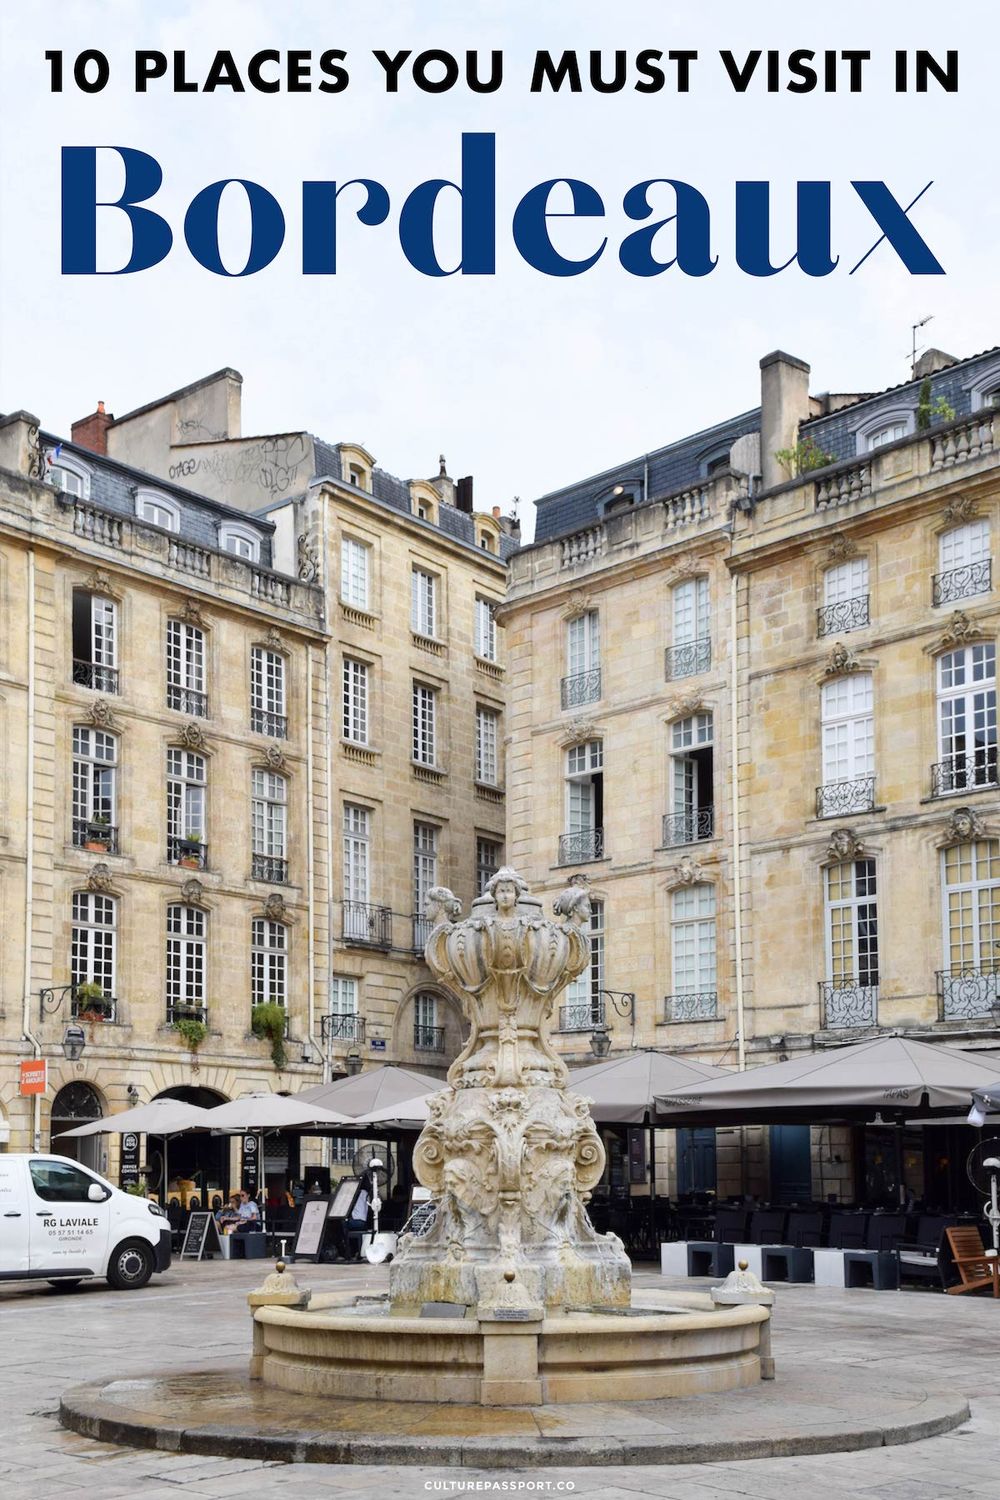 10 Places You Must Visit in Bordeaux